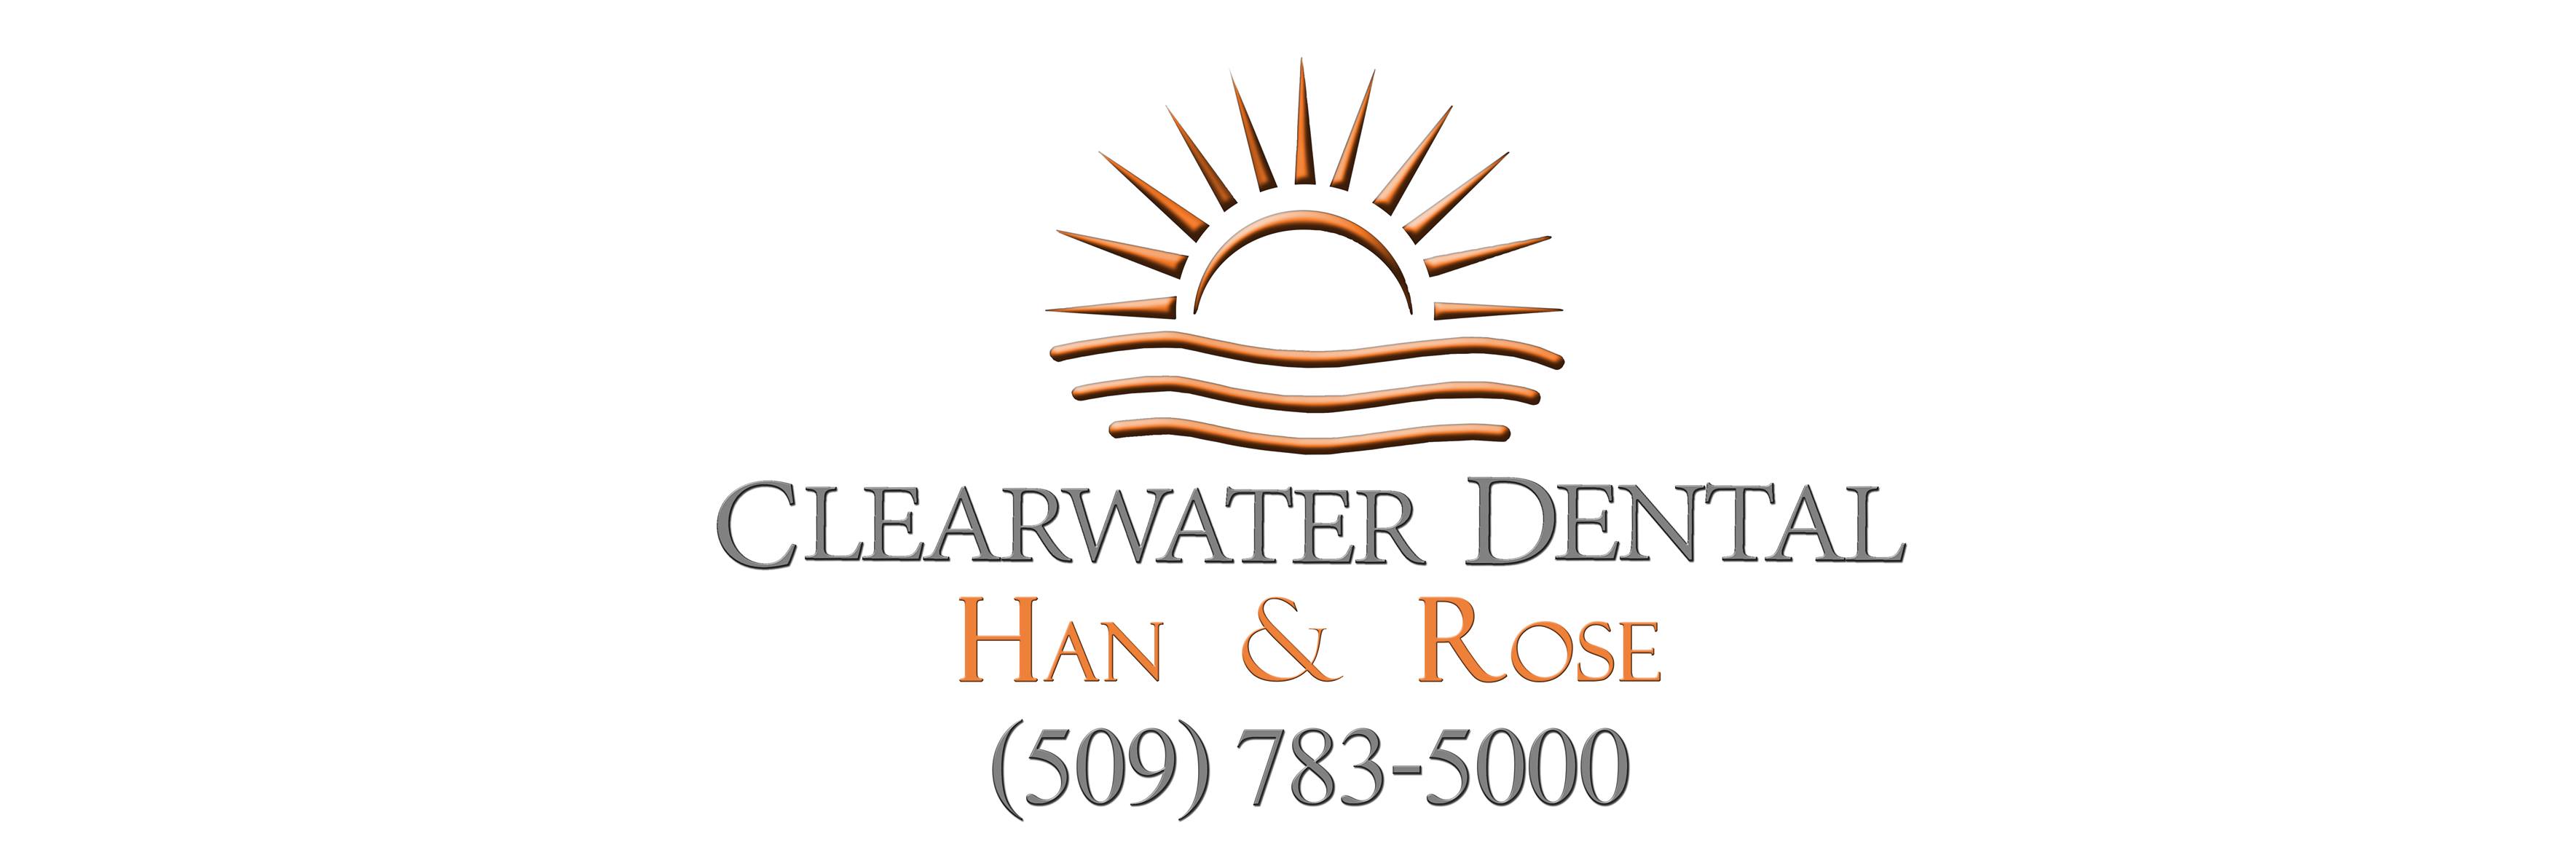 Clearwater Dental: Han & Rose